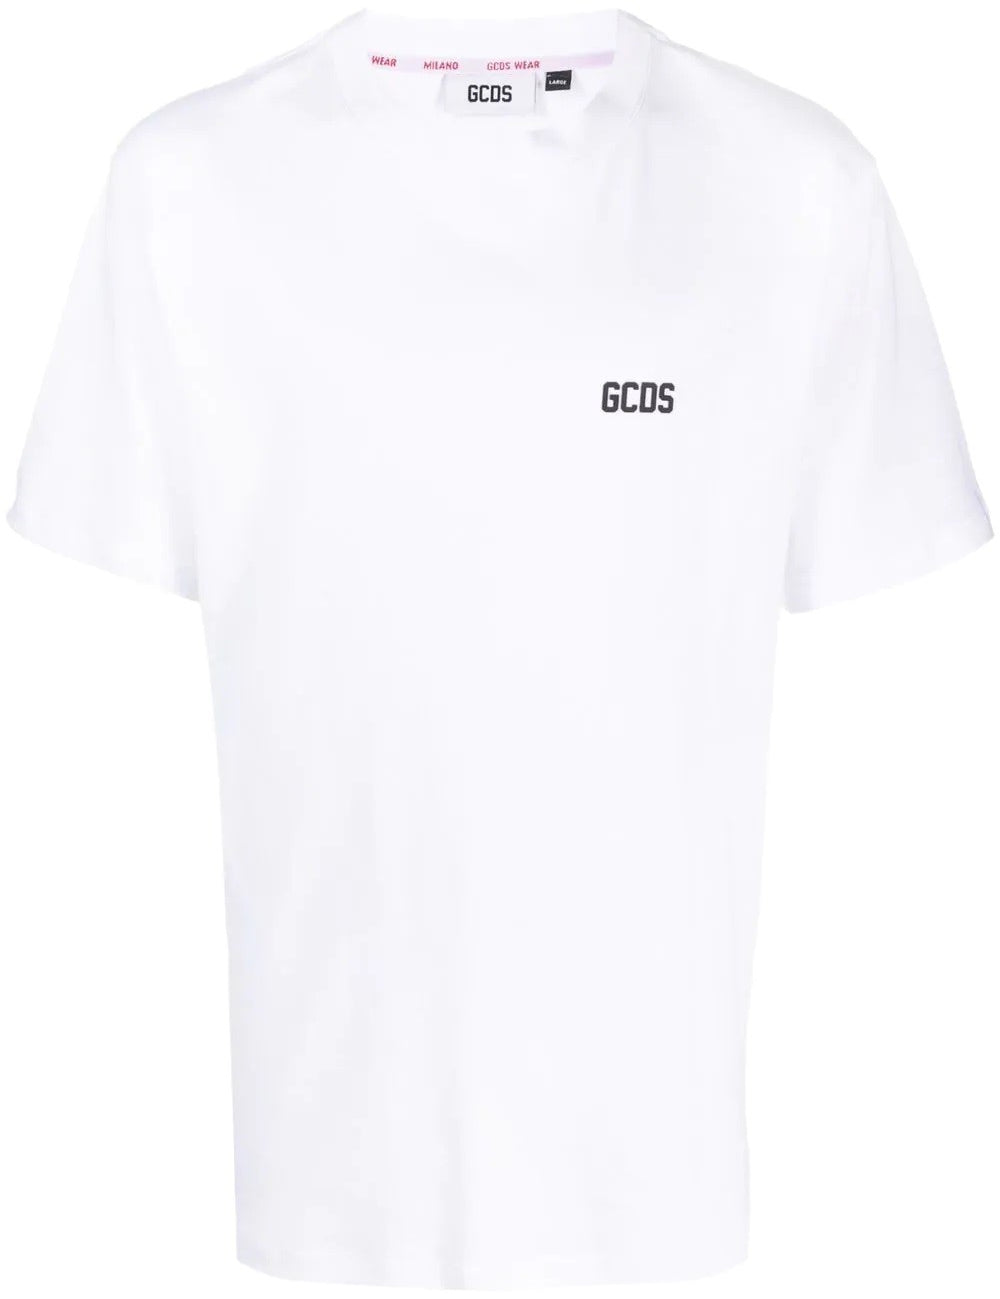 gcds-low-band-regular-t-shirt_f97e02a9-0e40-40b9-94ac-f2755b050580.jpg